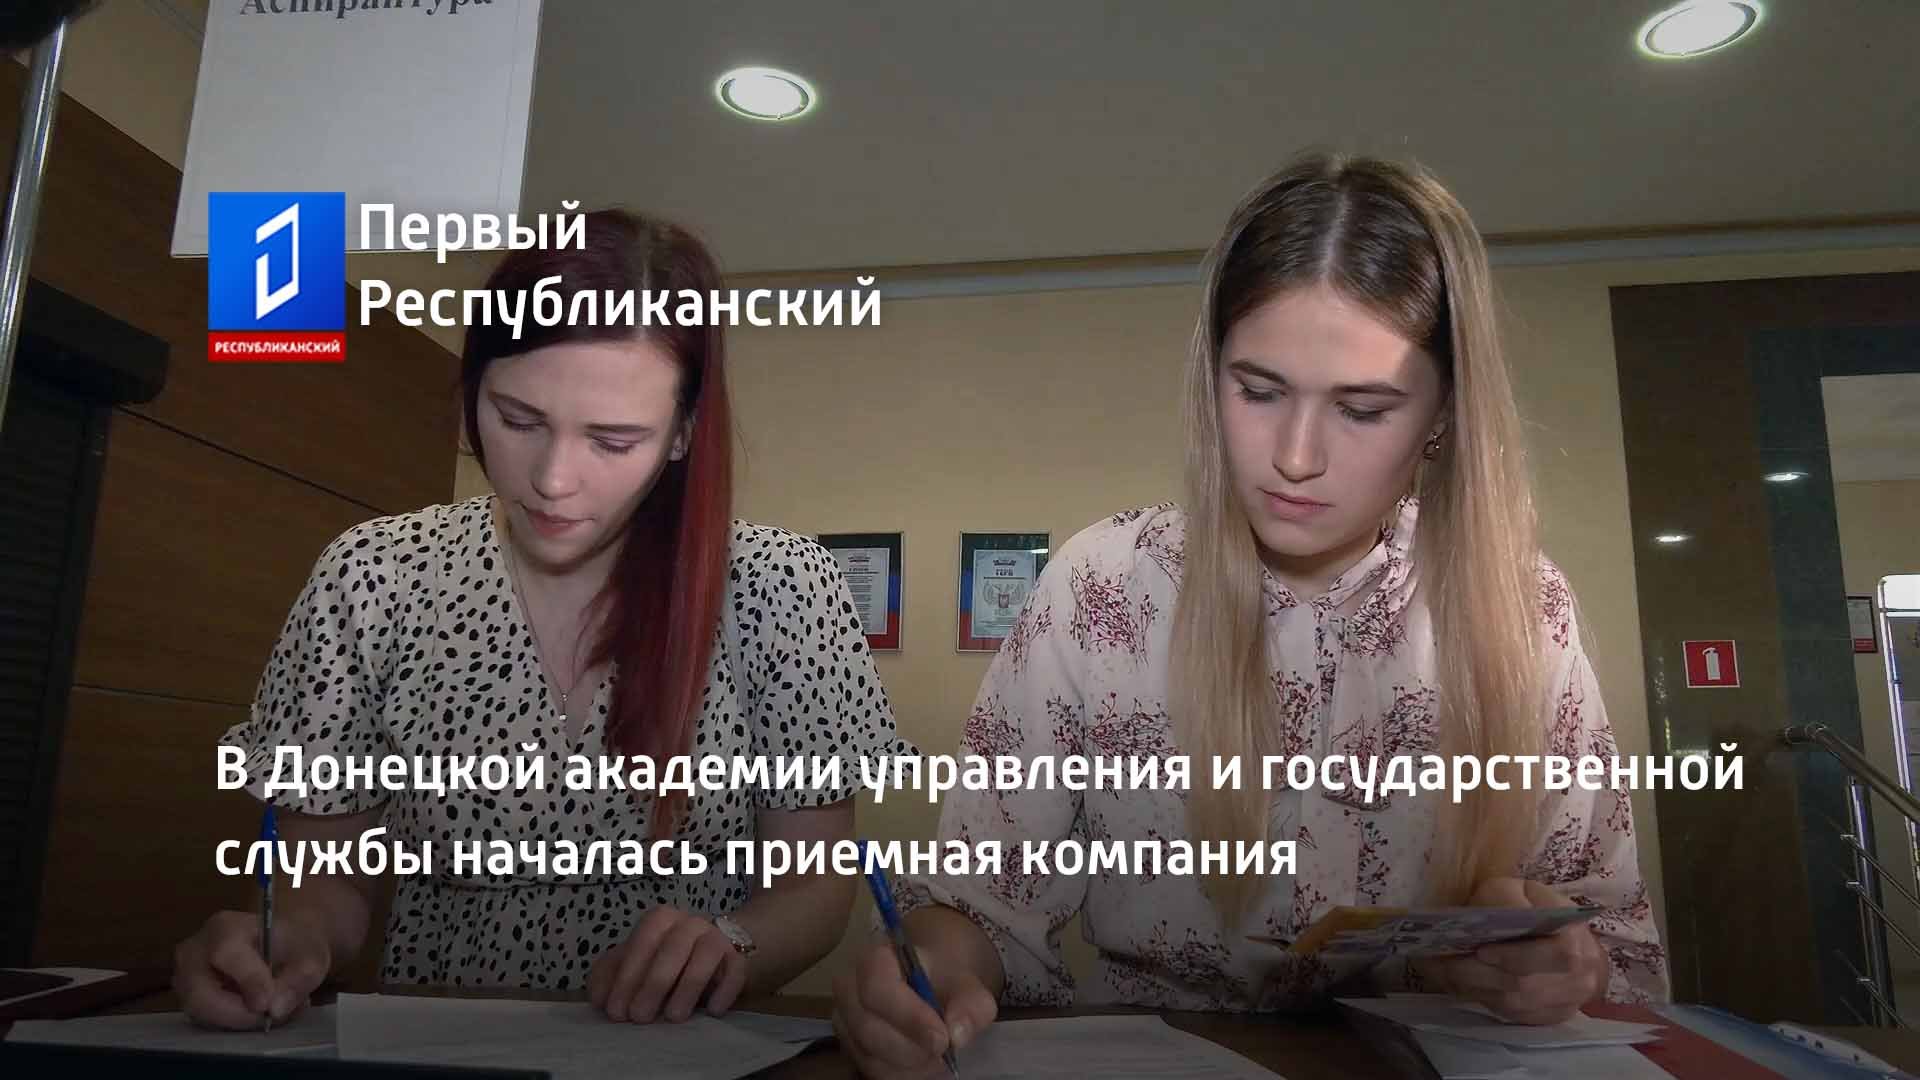 В Донецкой академии управления и государственной службы началась приемная компания